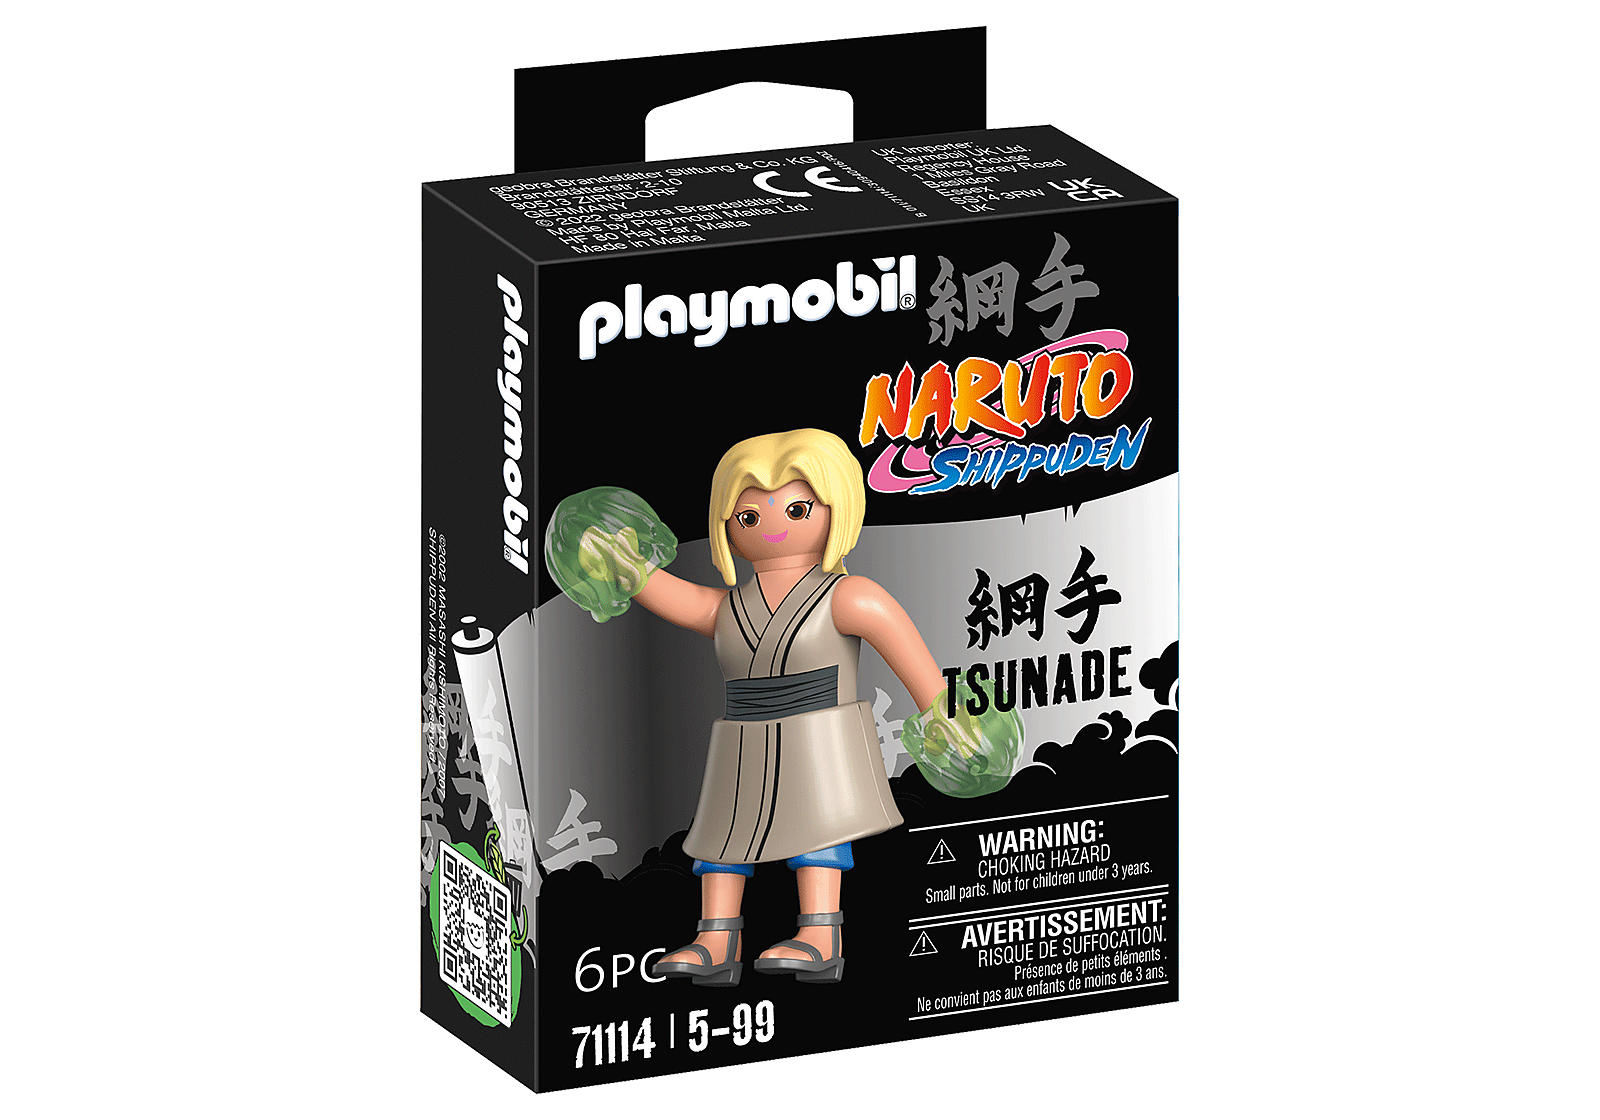 Playmobil Naruto Shippuden: Tsunade 71114